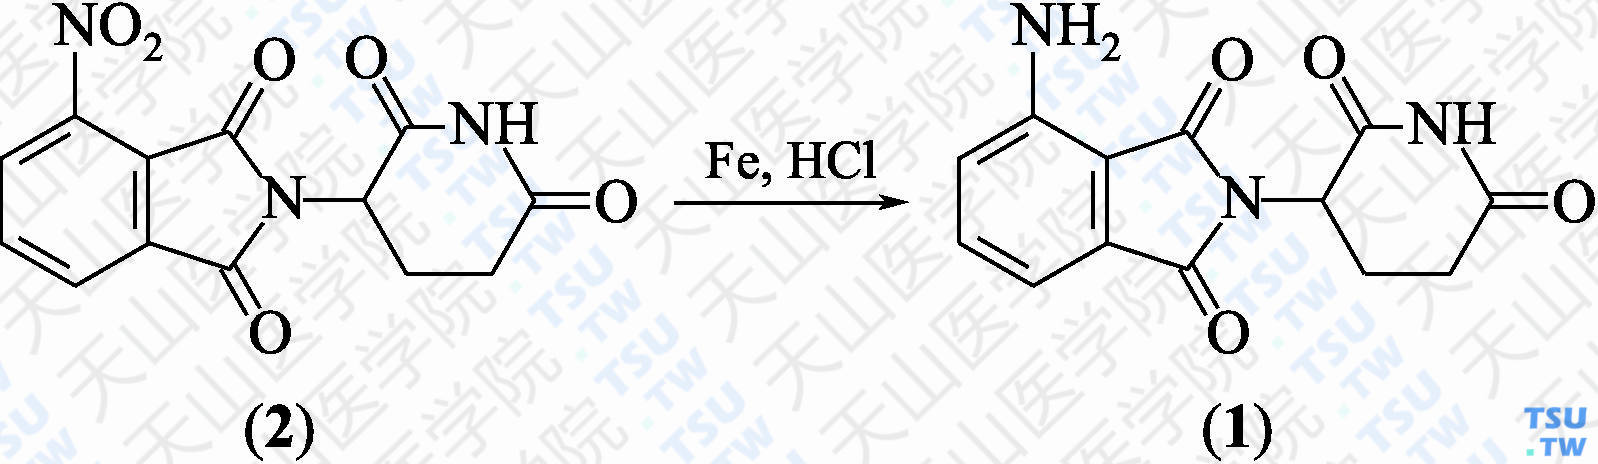 泊马度胺（分子式：C<sub>13</sub>H<sub>11</sub>N<sub>3</sub>O<sub>4</sub>）的合成方法路线及其结构式